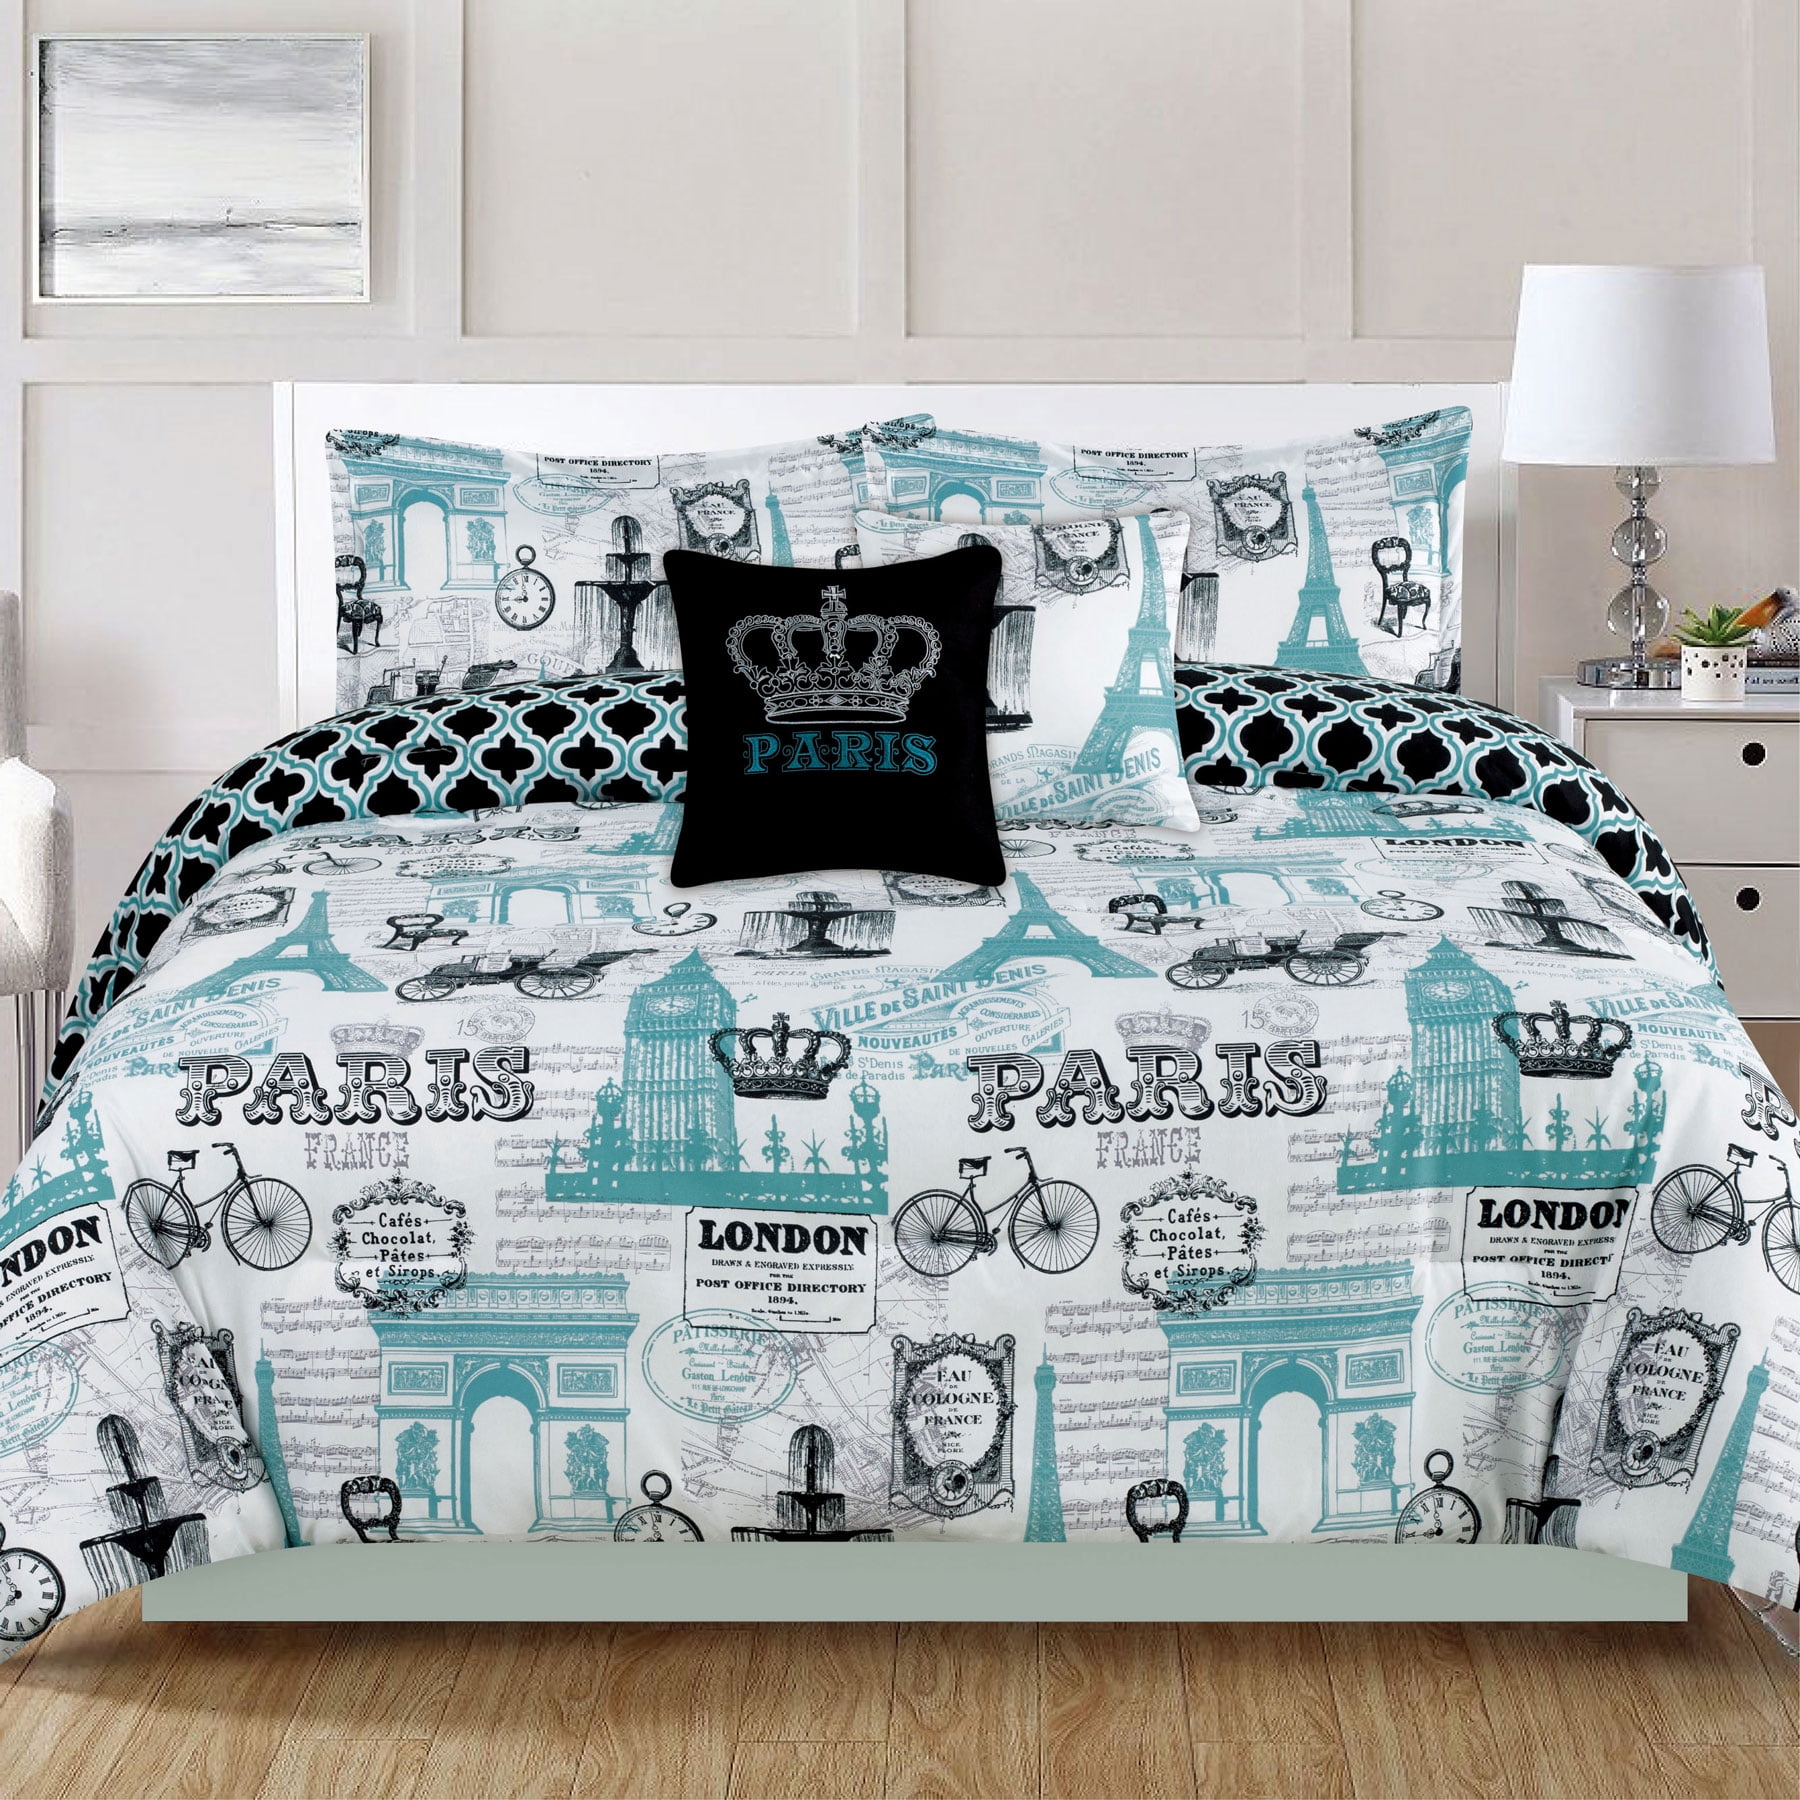 Bedding Queen 5 Piece Girls Comforter Bed Set, Paris Eiffel Tower London,  Teal Blue